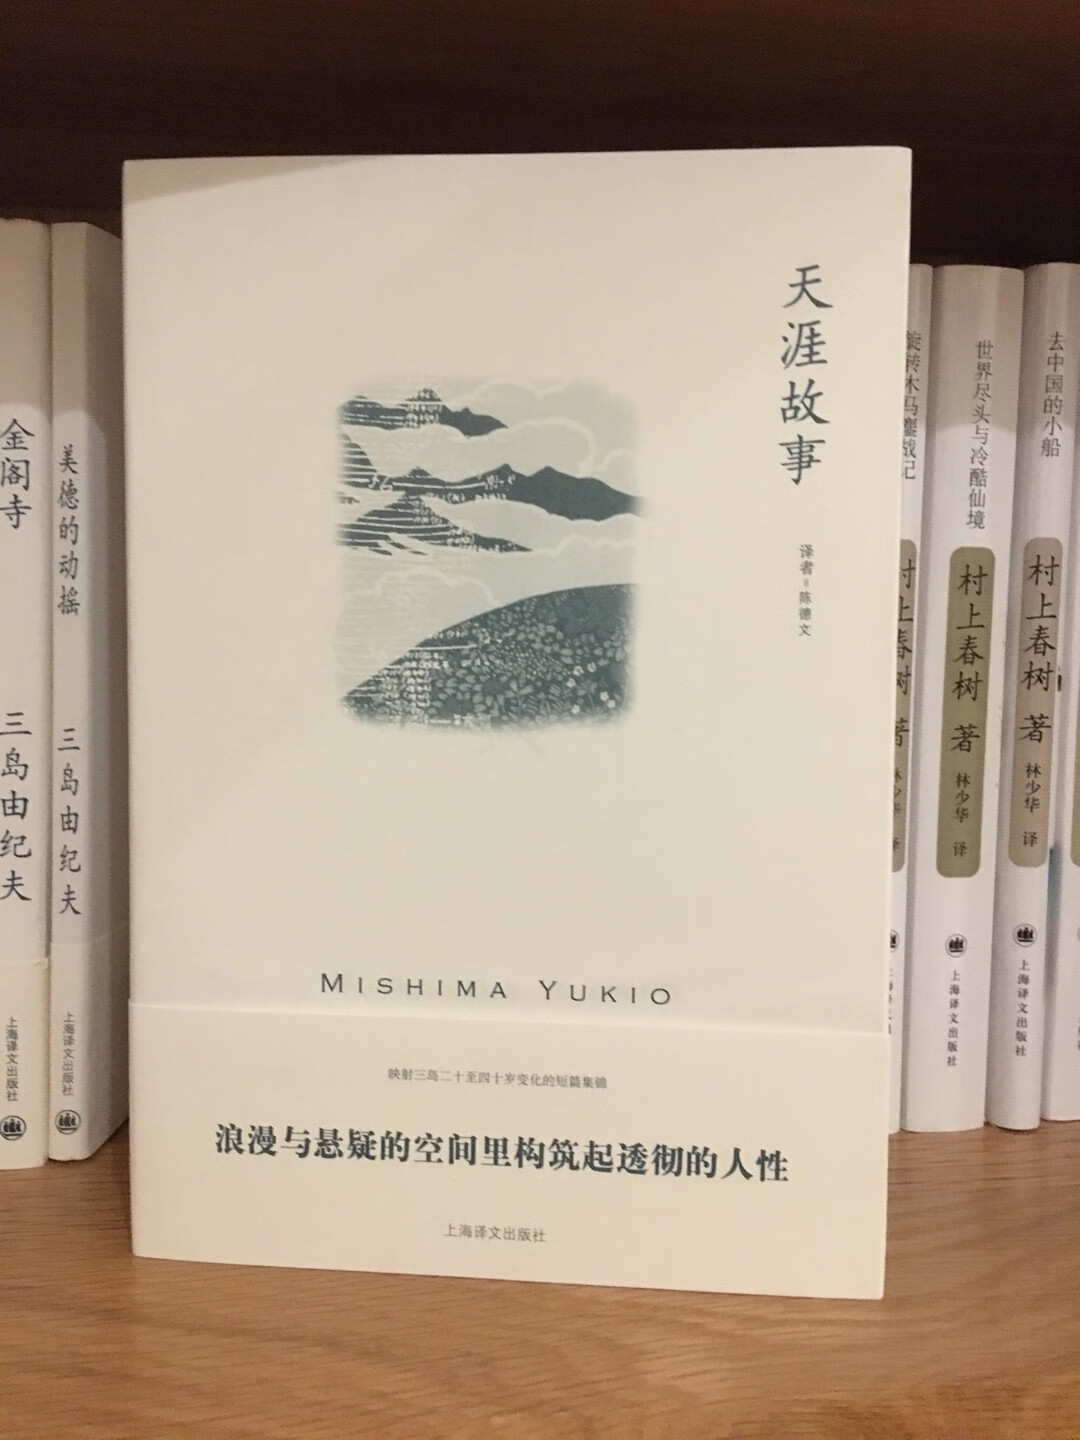 上海译文的这套三岛由纪夫会支持到底。